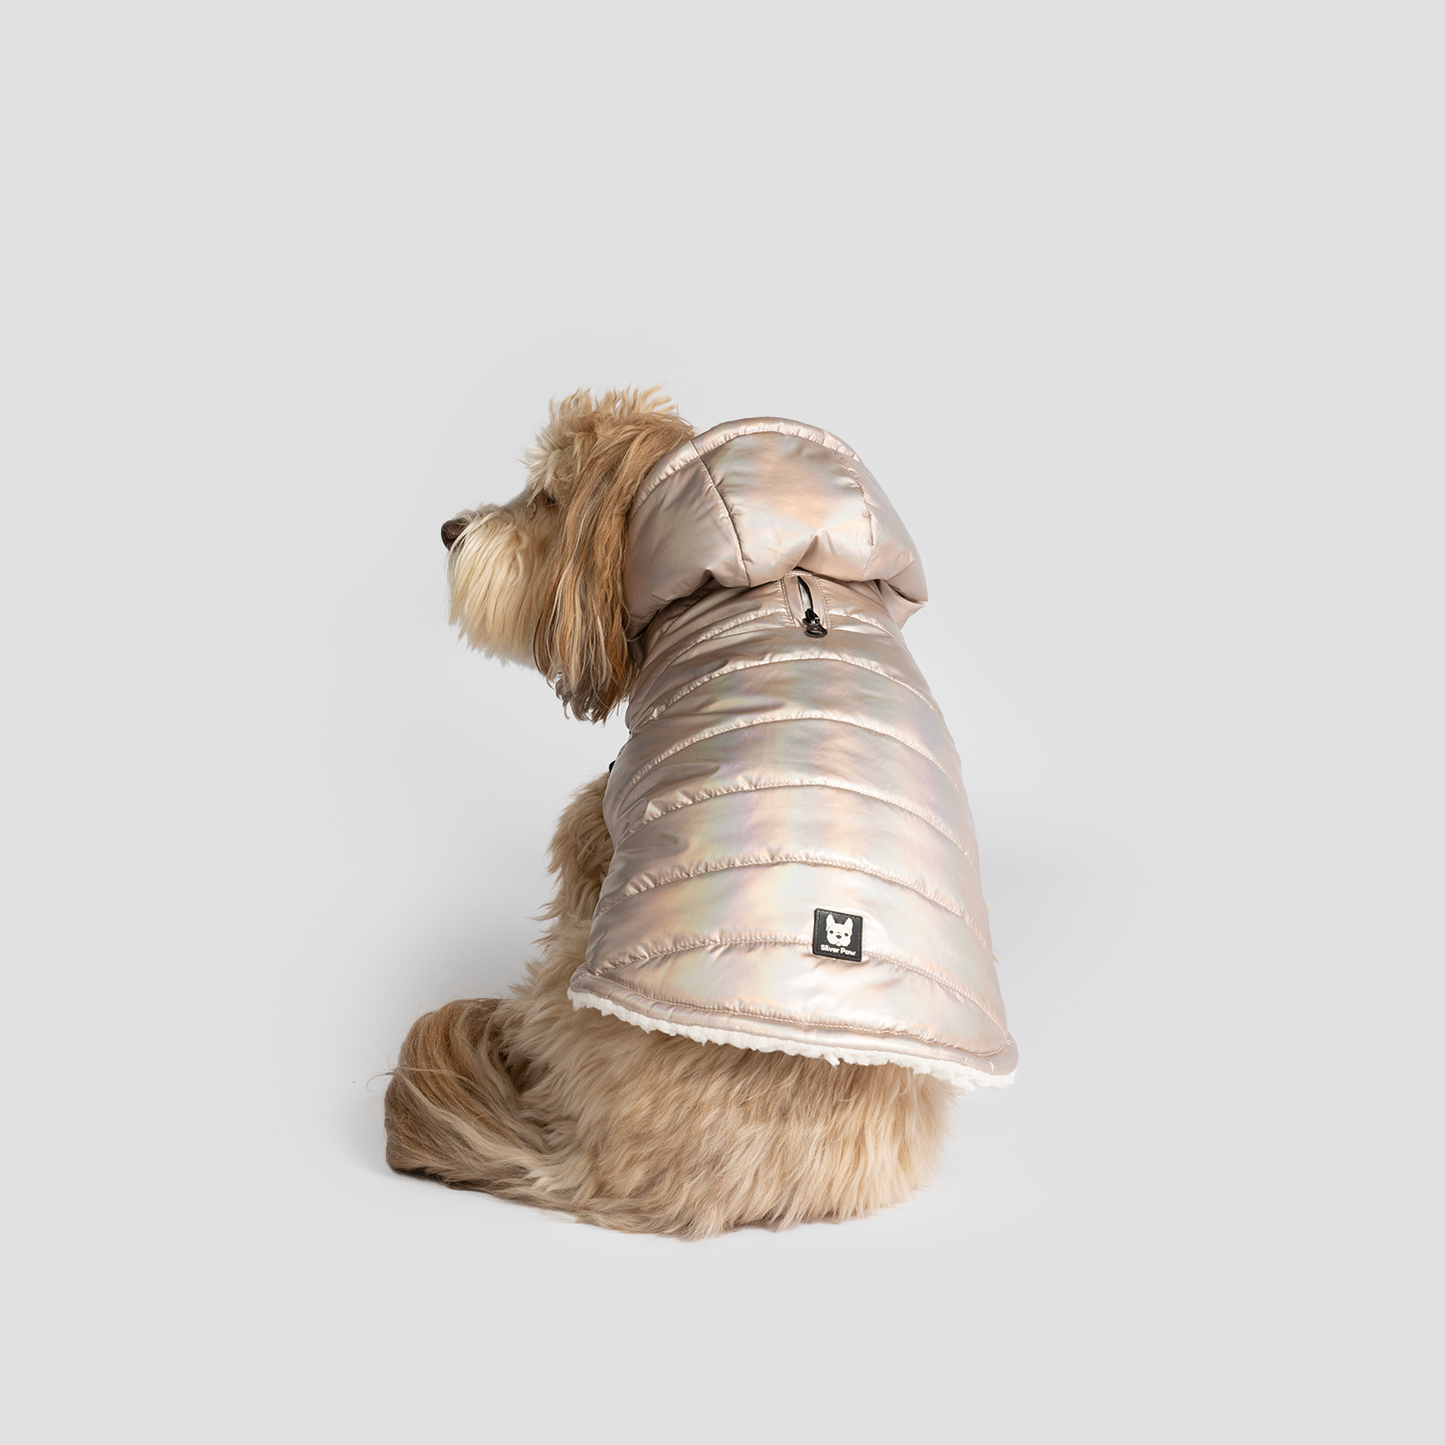 Silver Paw Emma Dog Jacket - Shiny Pink:  Image